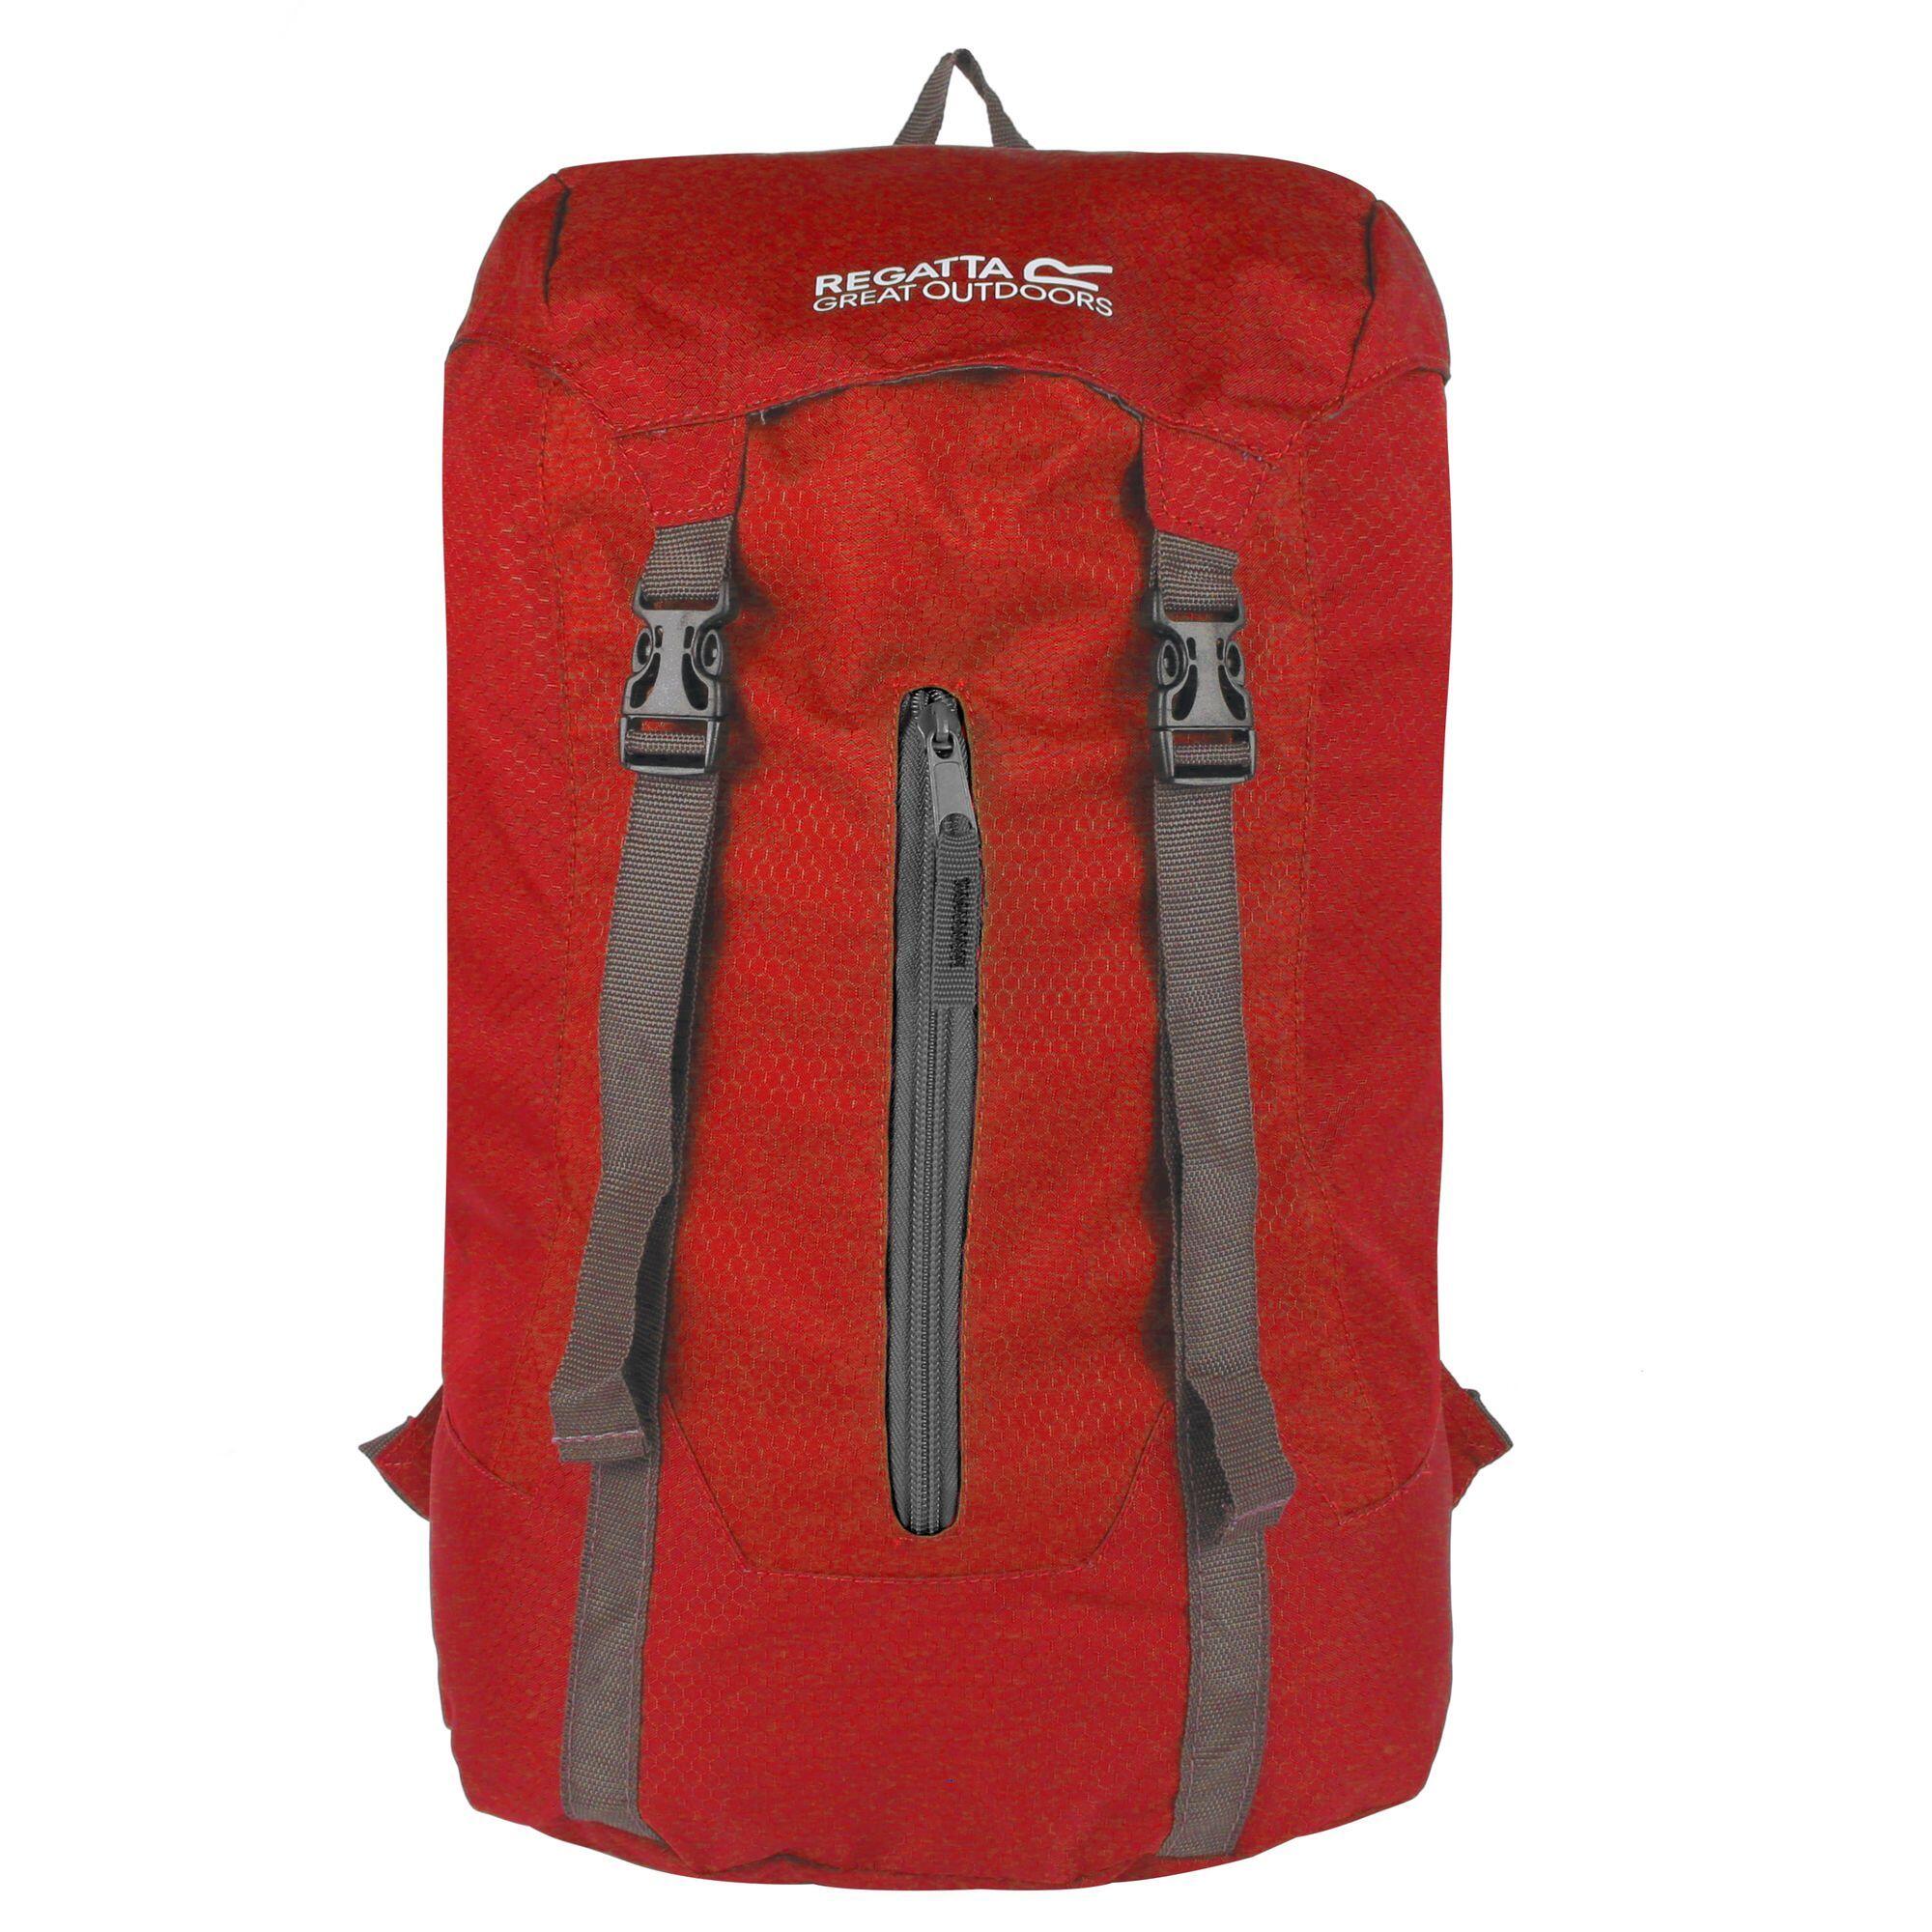 Great Outdoors Easypack Packaway Rucksack/Backpack (25 Litres) (Pepper) 1/5